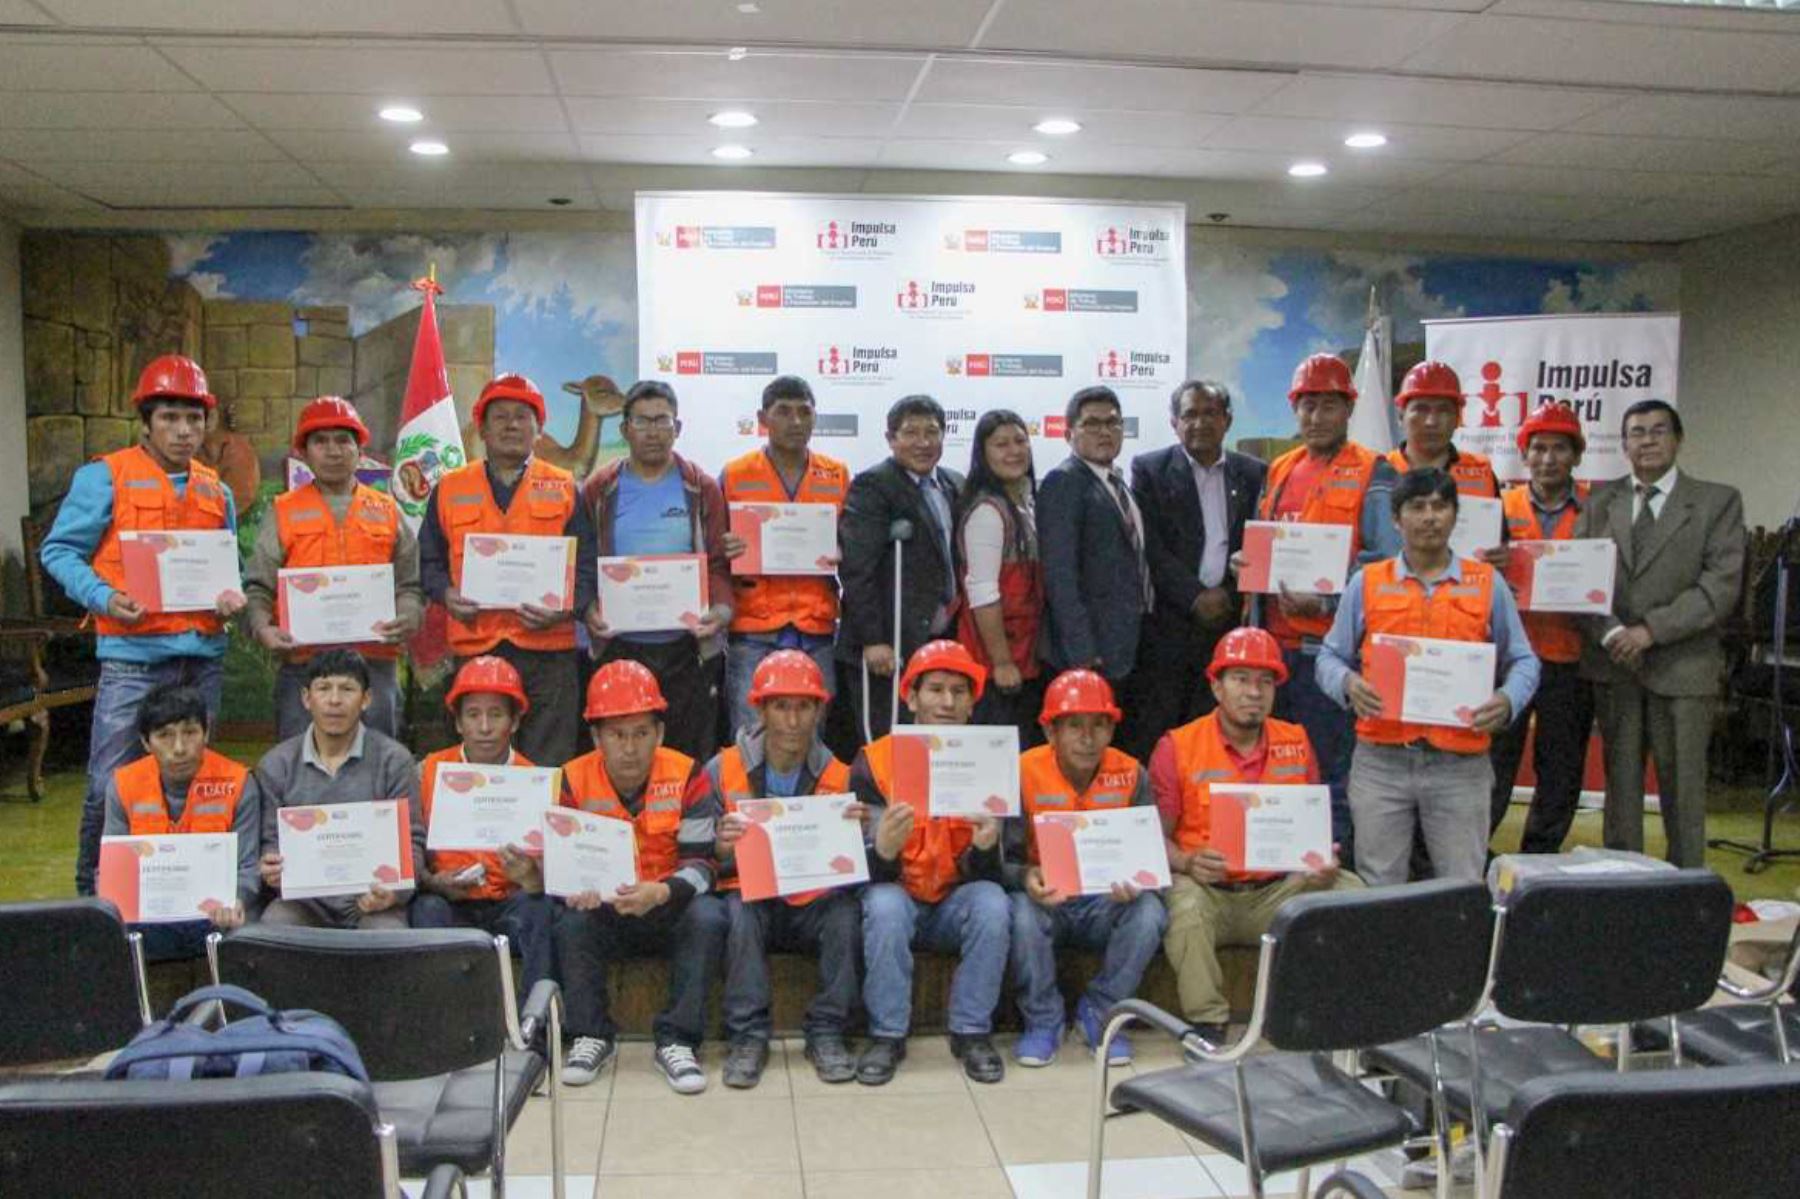 Impulsa Perú capacitó a 20 personas de Ayacucho como operarios de construcción civil y recibieron un certificado de acreditación